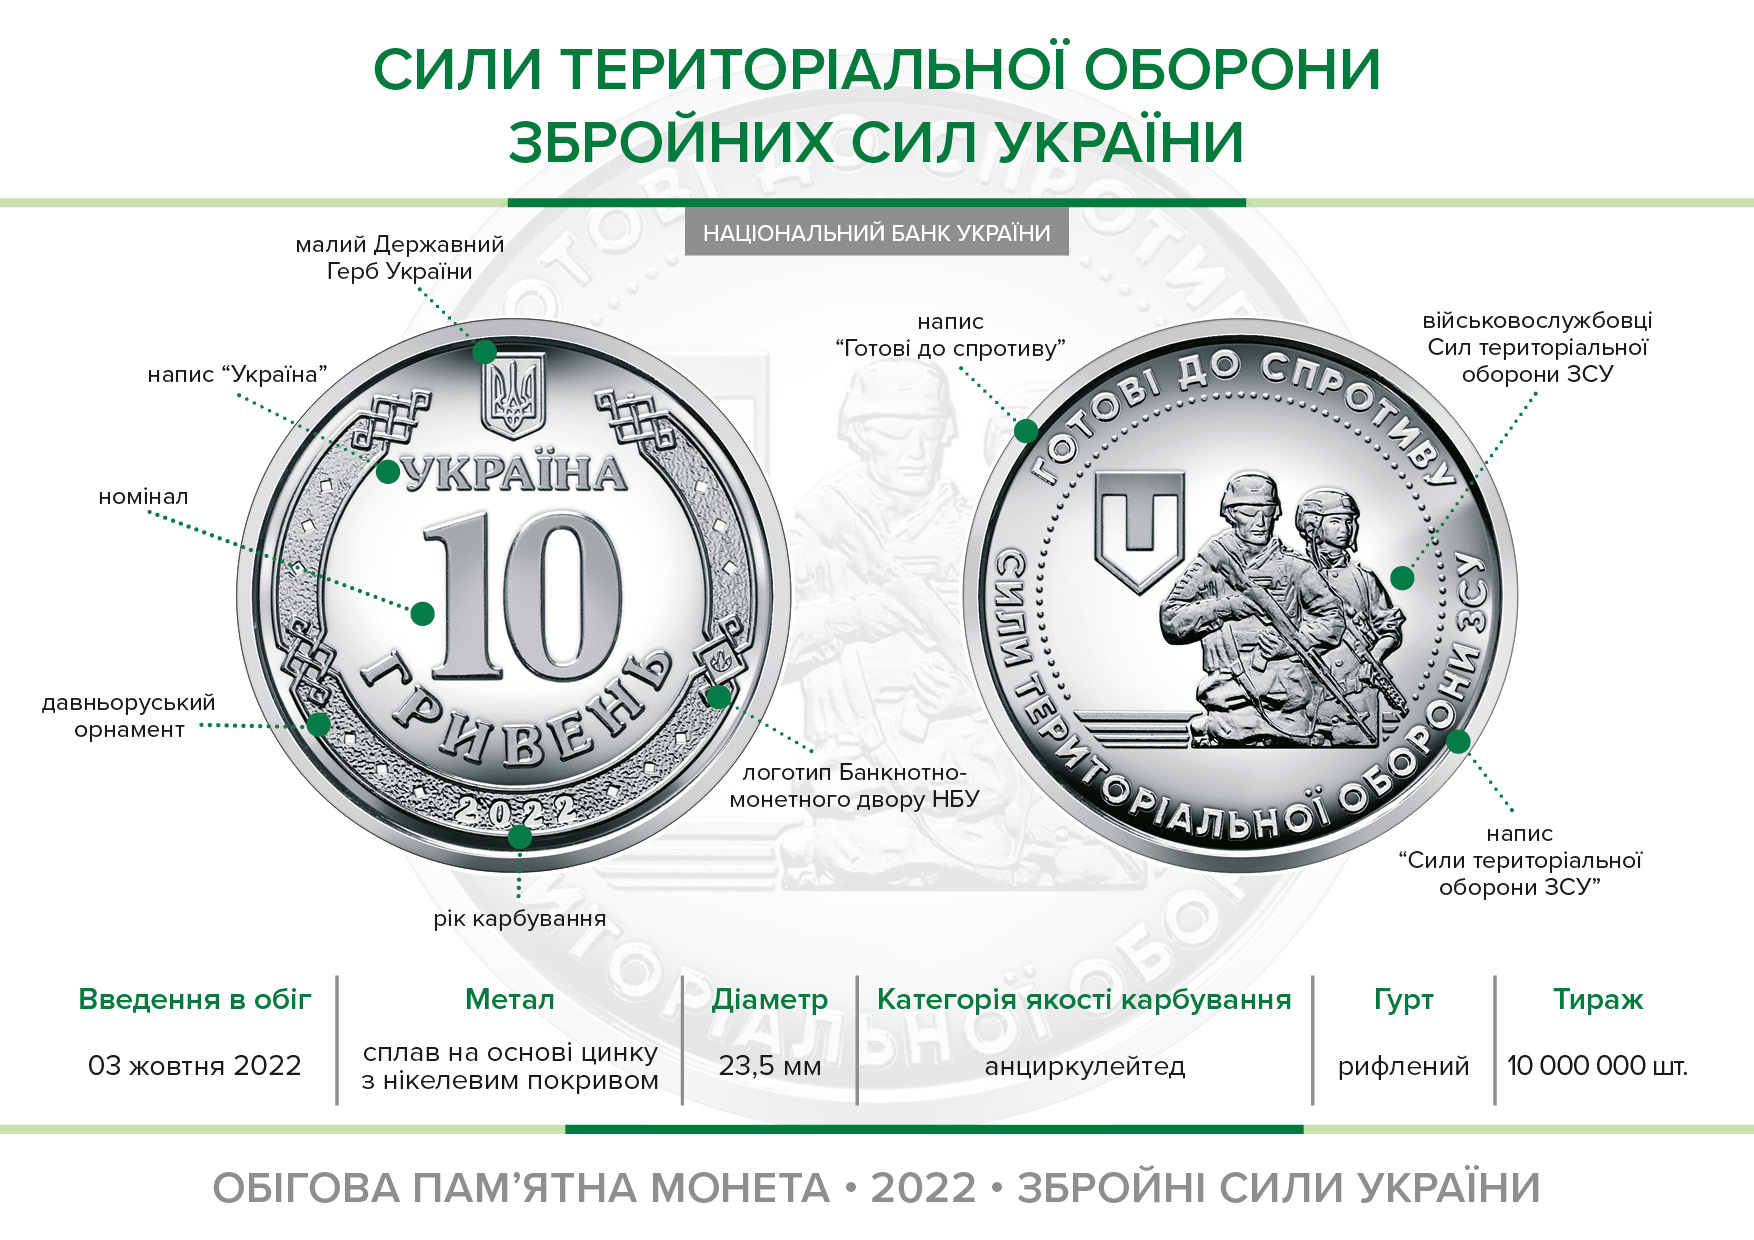 Обігова пам’ятна монета "Сили територіальної оборони Збройних Сил України" уведена в обіг із 03 жовтня 2022 року